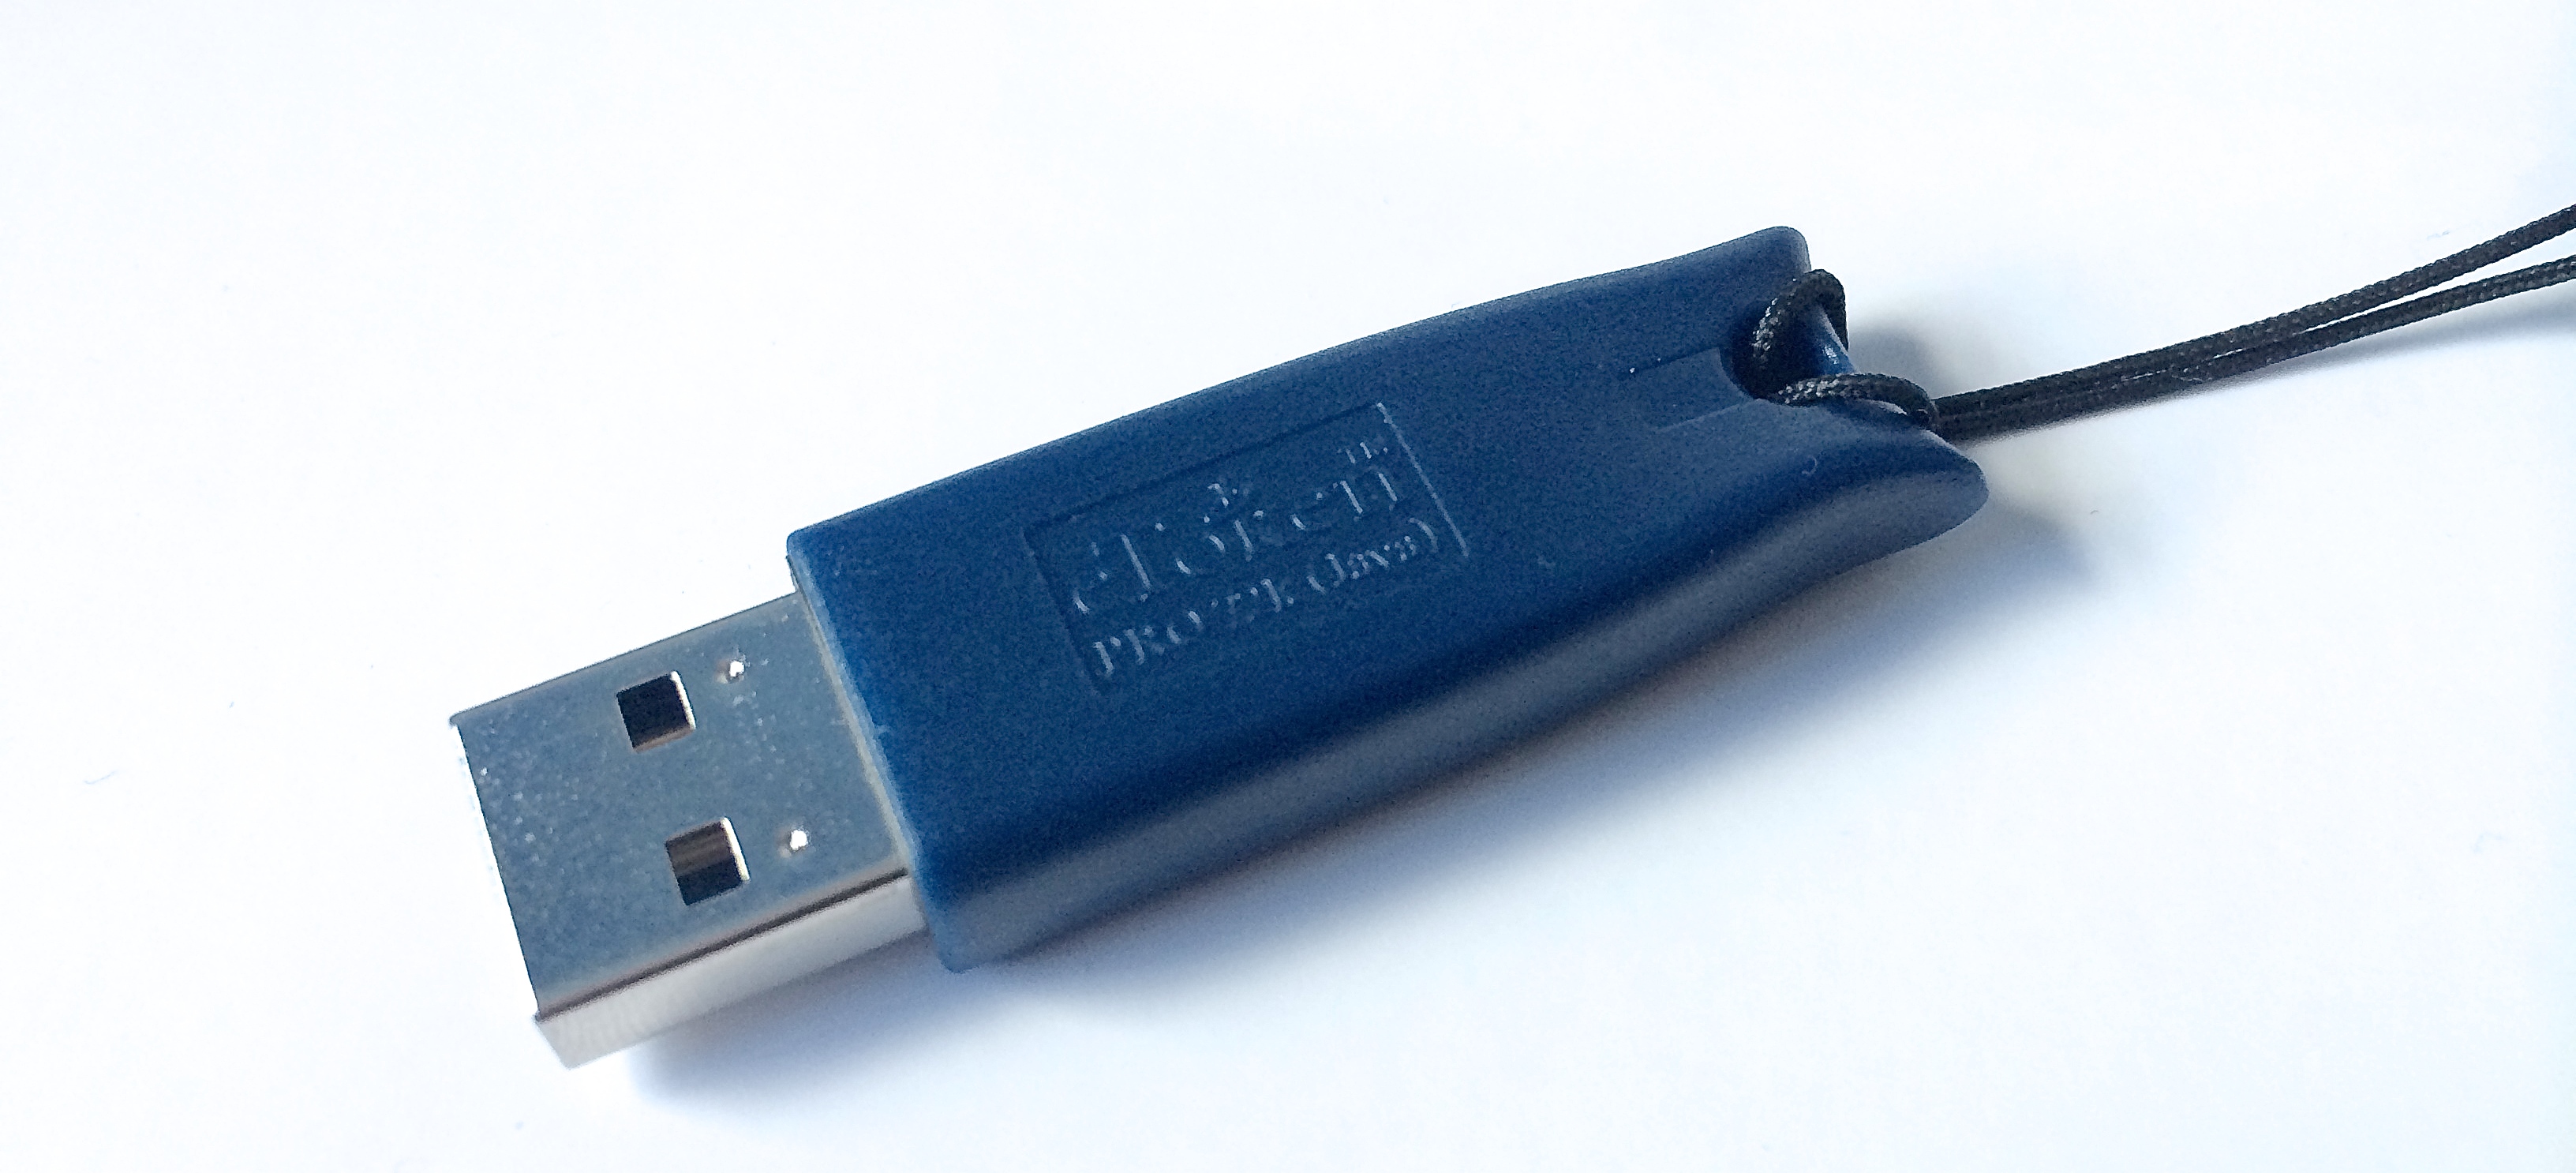 Sca токен. Рутокен етокен. USB-ключи ETOKEN. Флешка юсб токен. Етокен алладин.